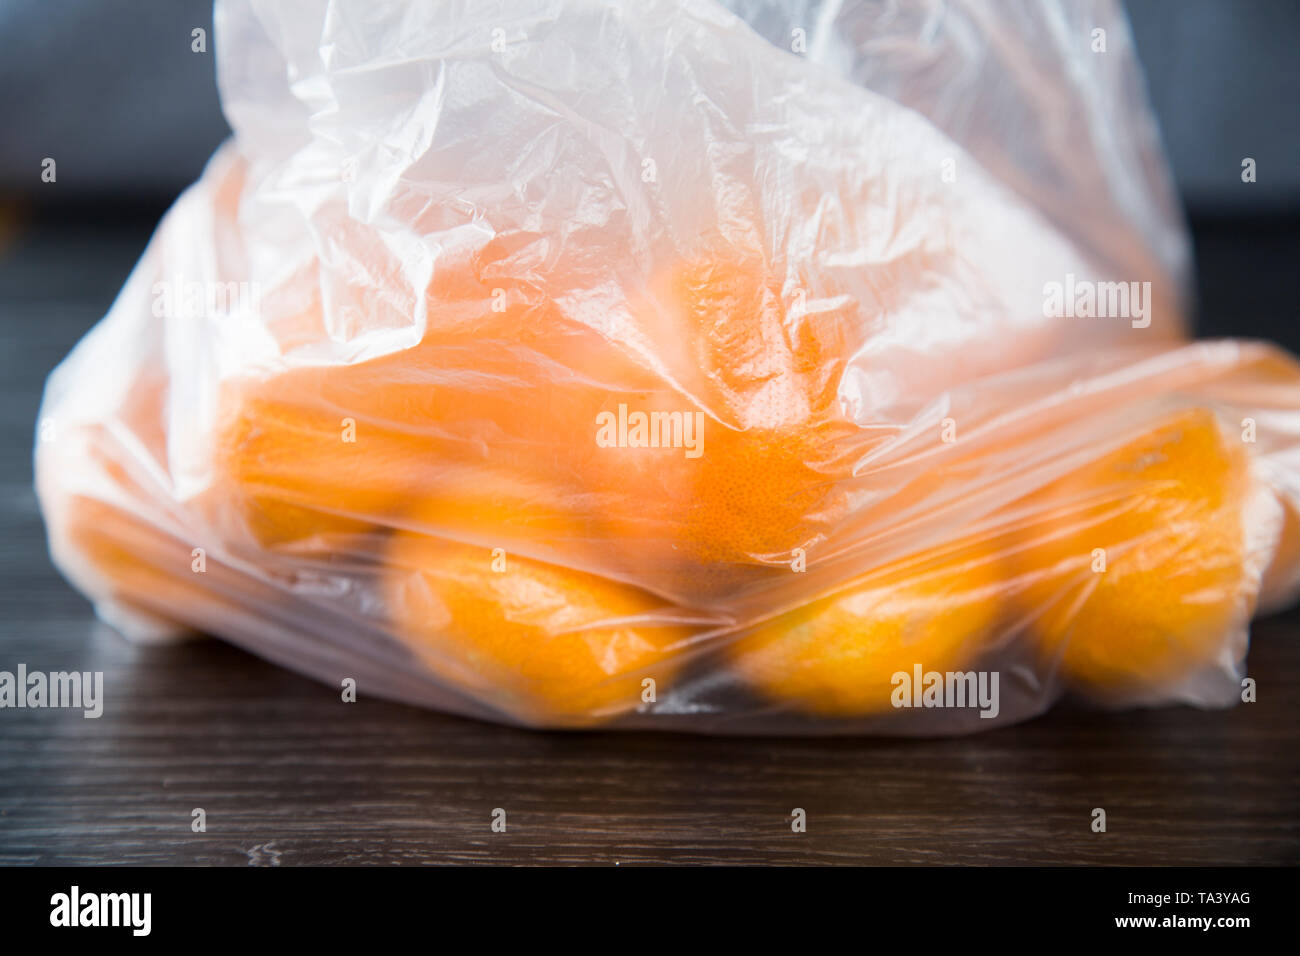 Mandarini acquistati al supermercato in un singolo uso di produrre una busta di plastica. Non rispettosi dell'ambiente. Bella la frutta di arancia, nessun marchio che mostra. Foto Stock